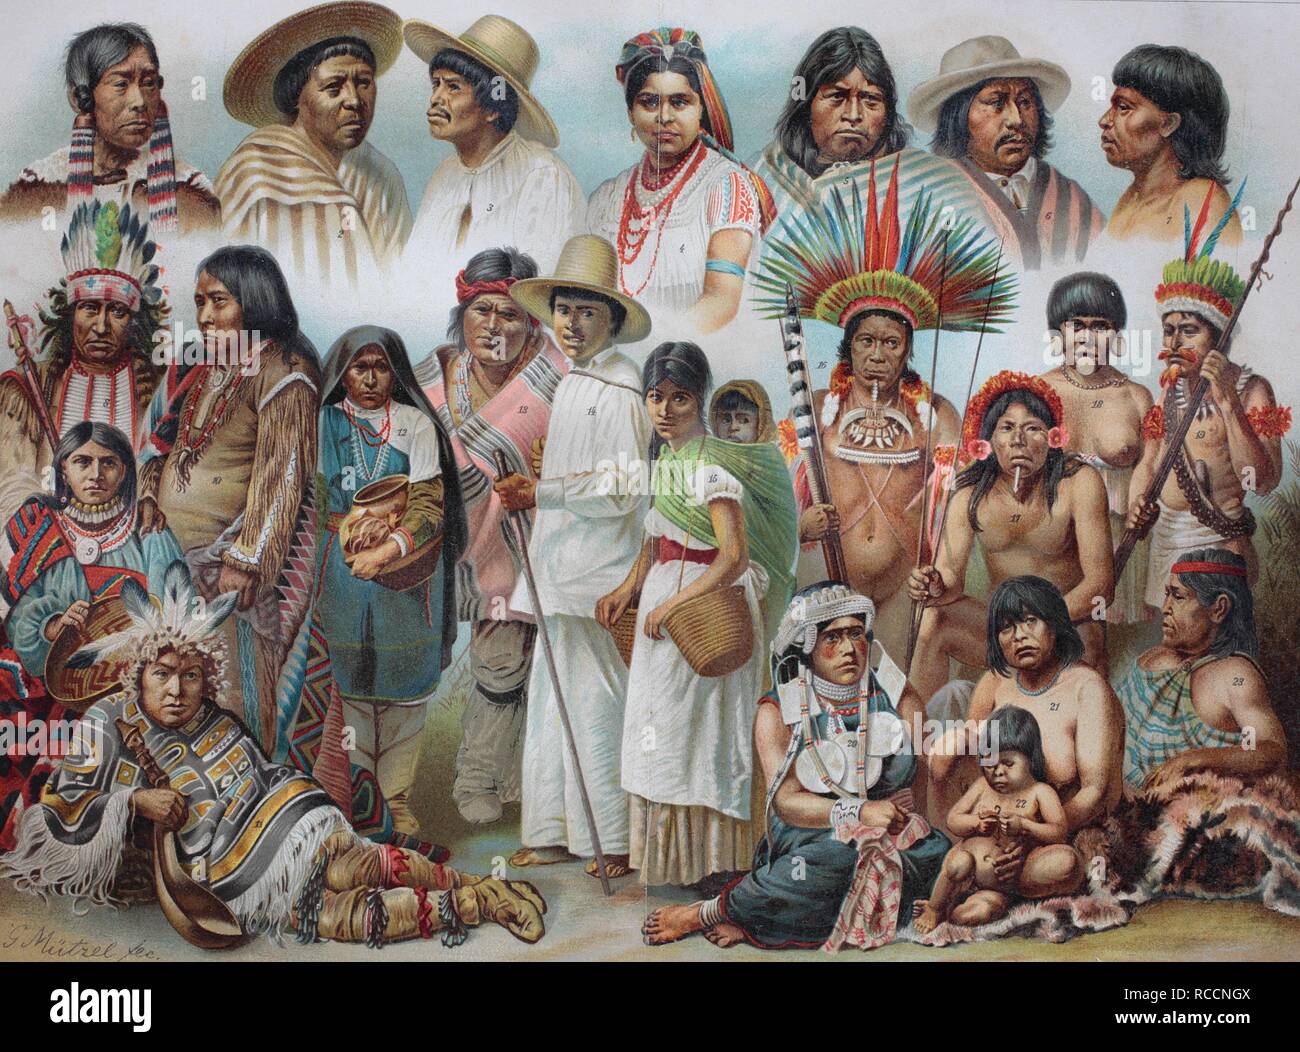 Какие европейские народы начали исследование южной америки. Индейцы в Латинской Америке 19 век. Индейские племена Латинской Америки. Этническая живопись. Народы Америки живопись.